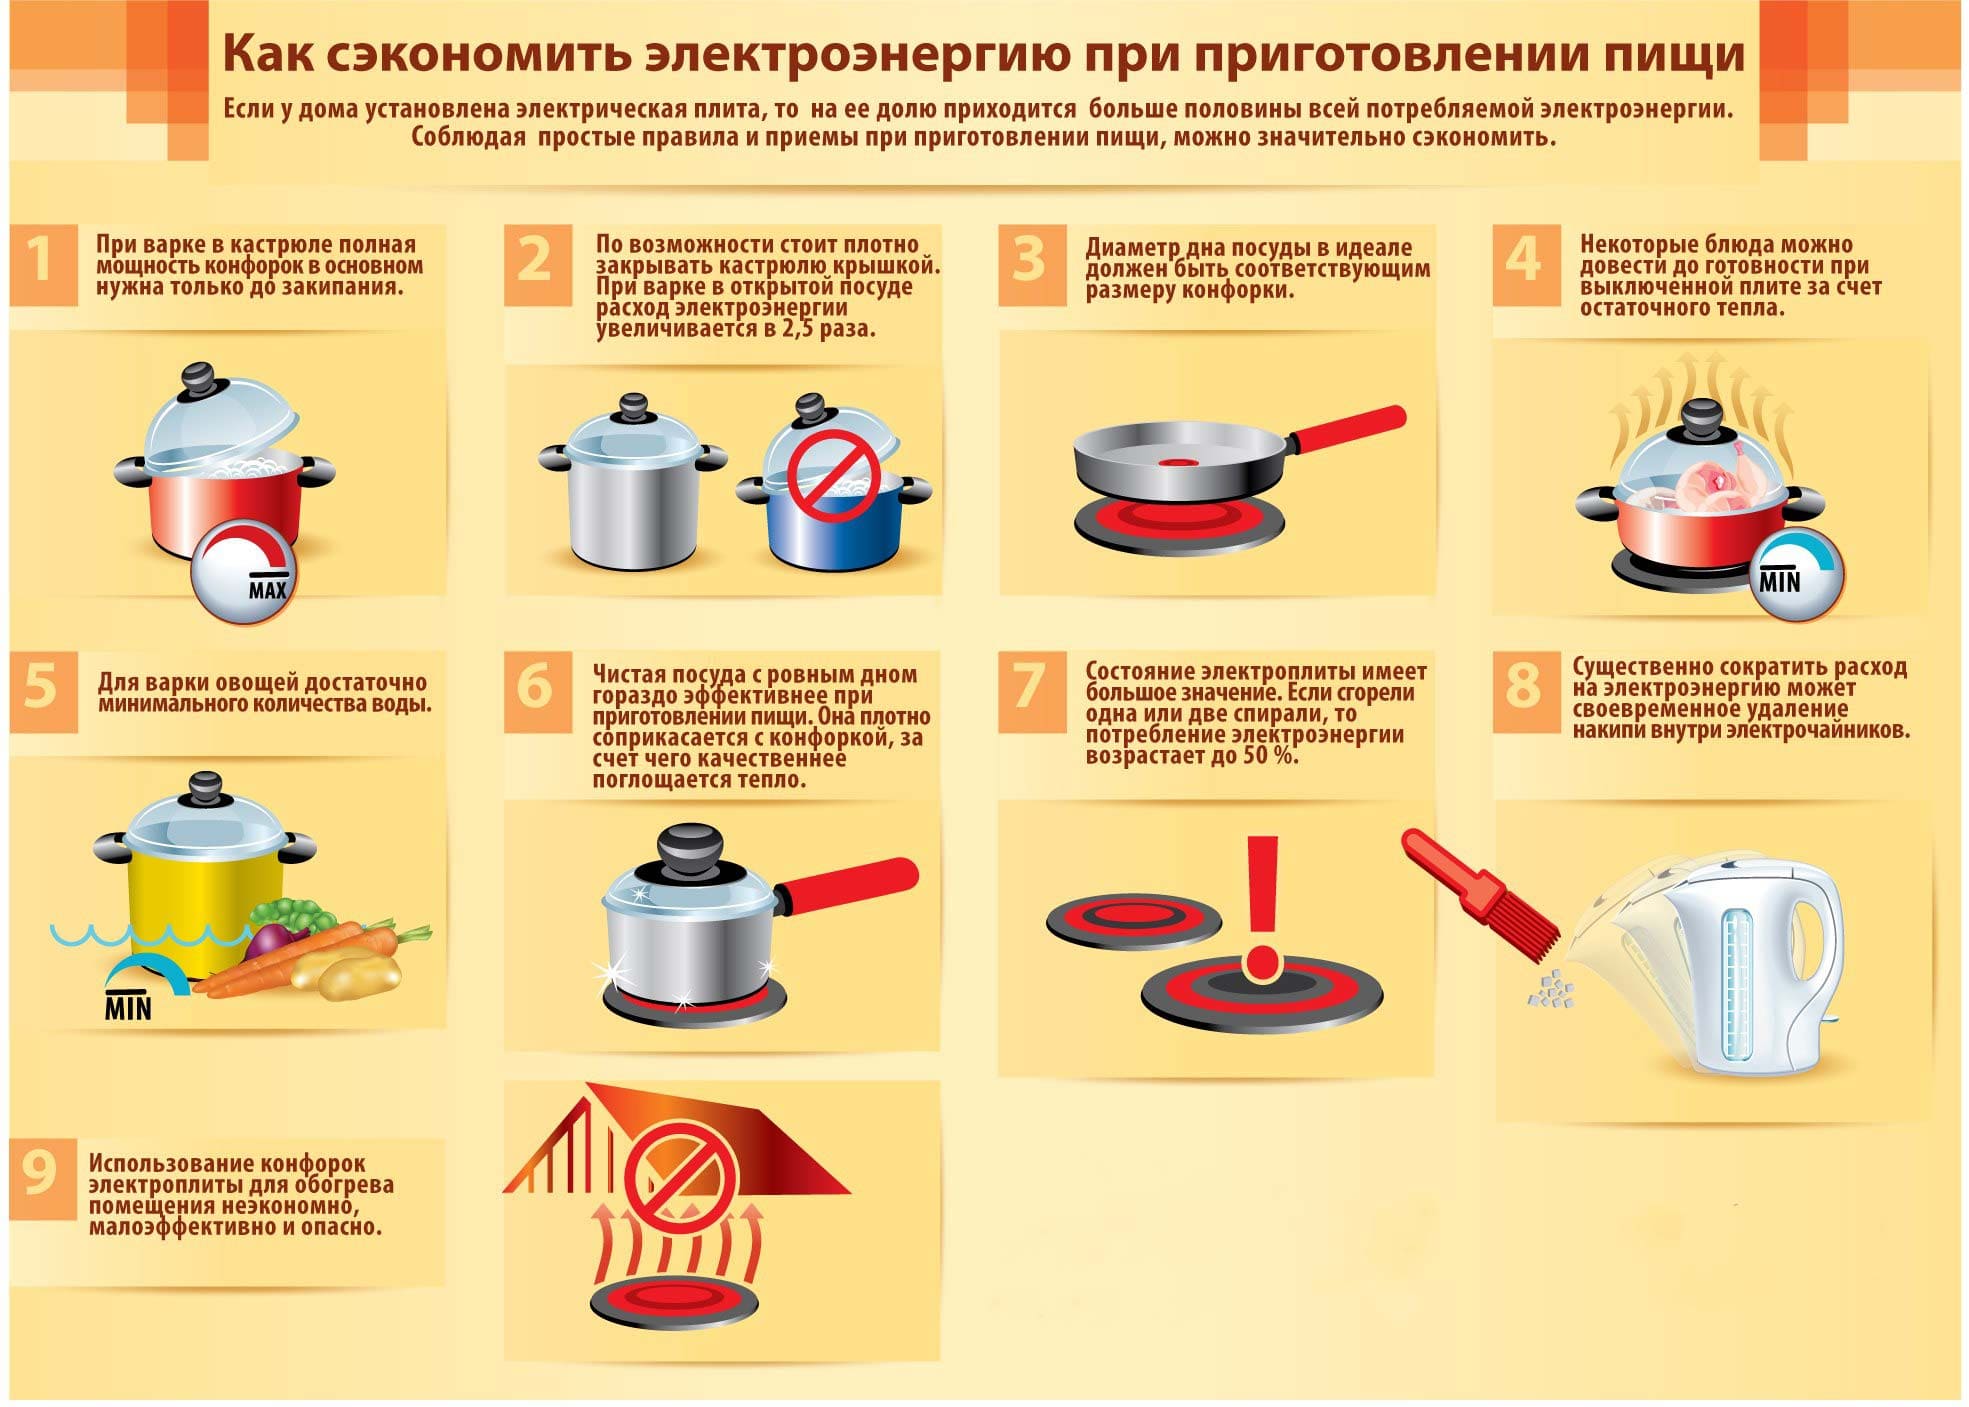 Советы по экономии при приготовлении пищи